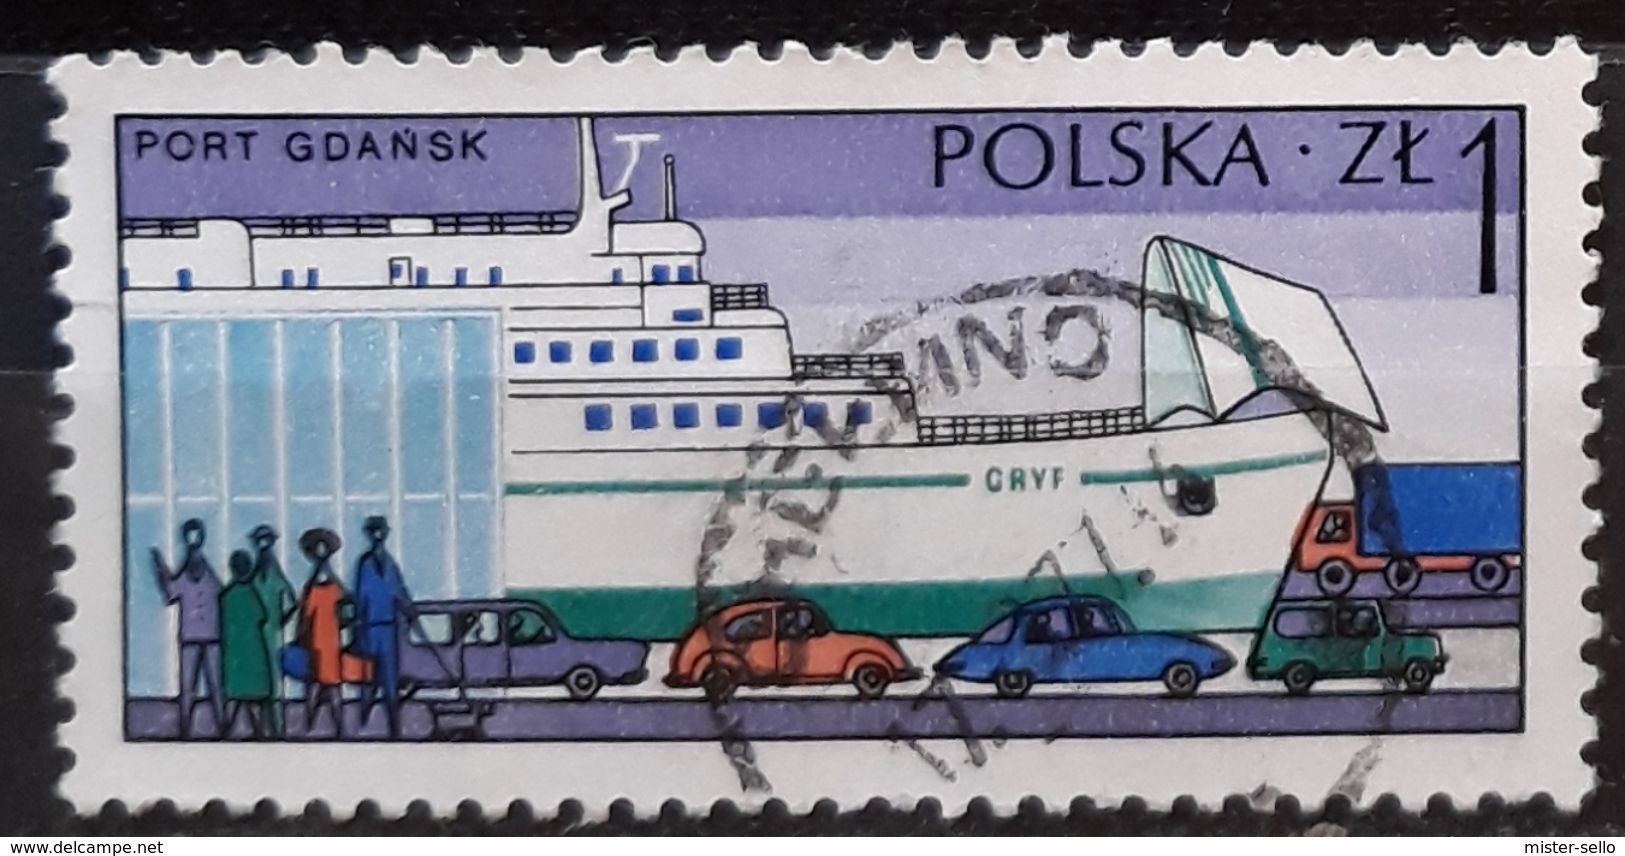 POLONIA 1976 Polish Harbours. USADO - USED. - Usati